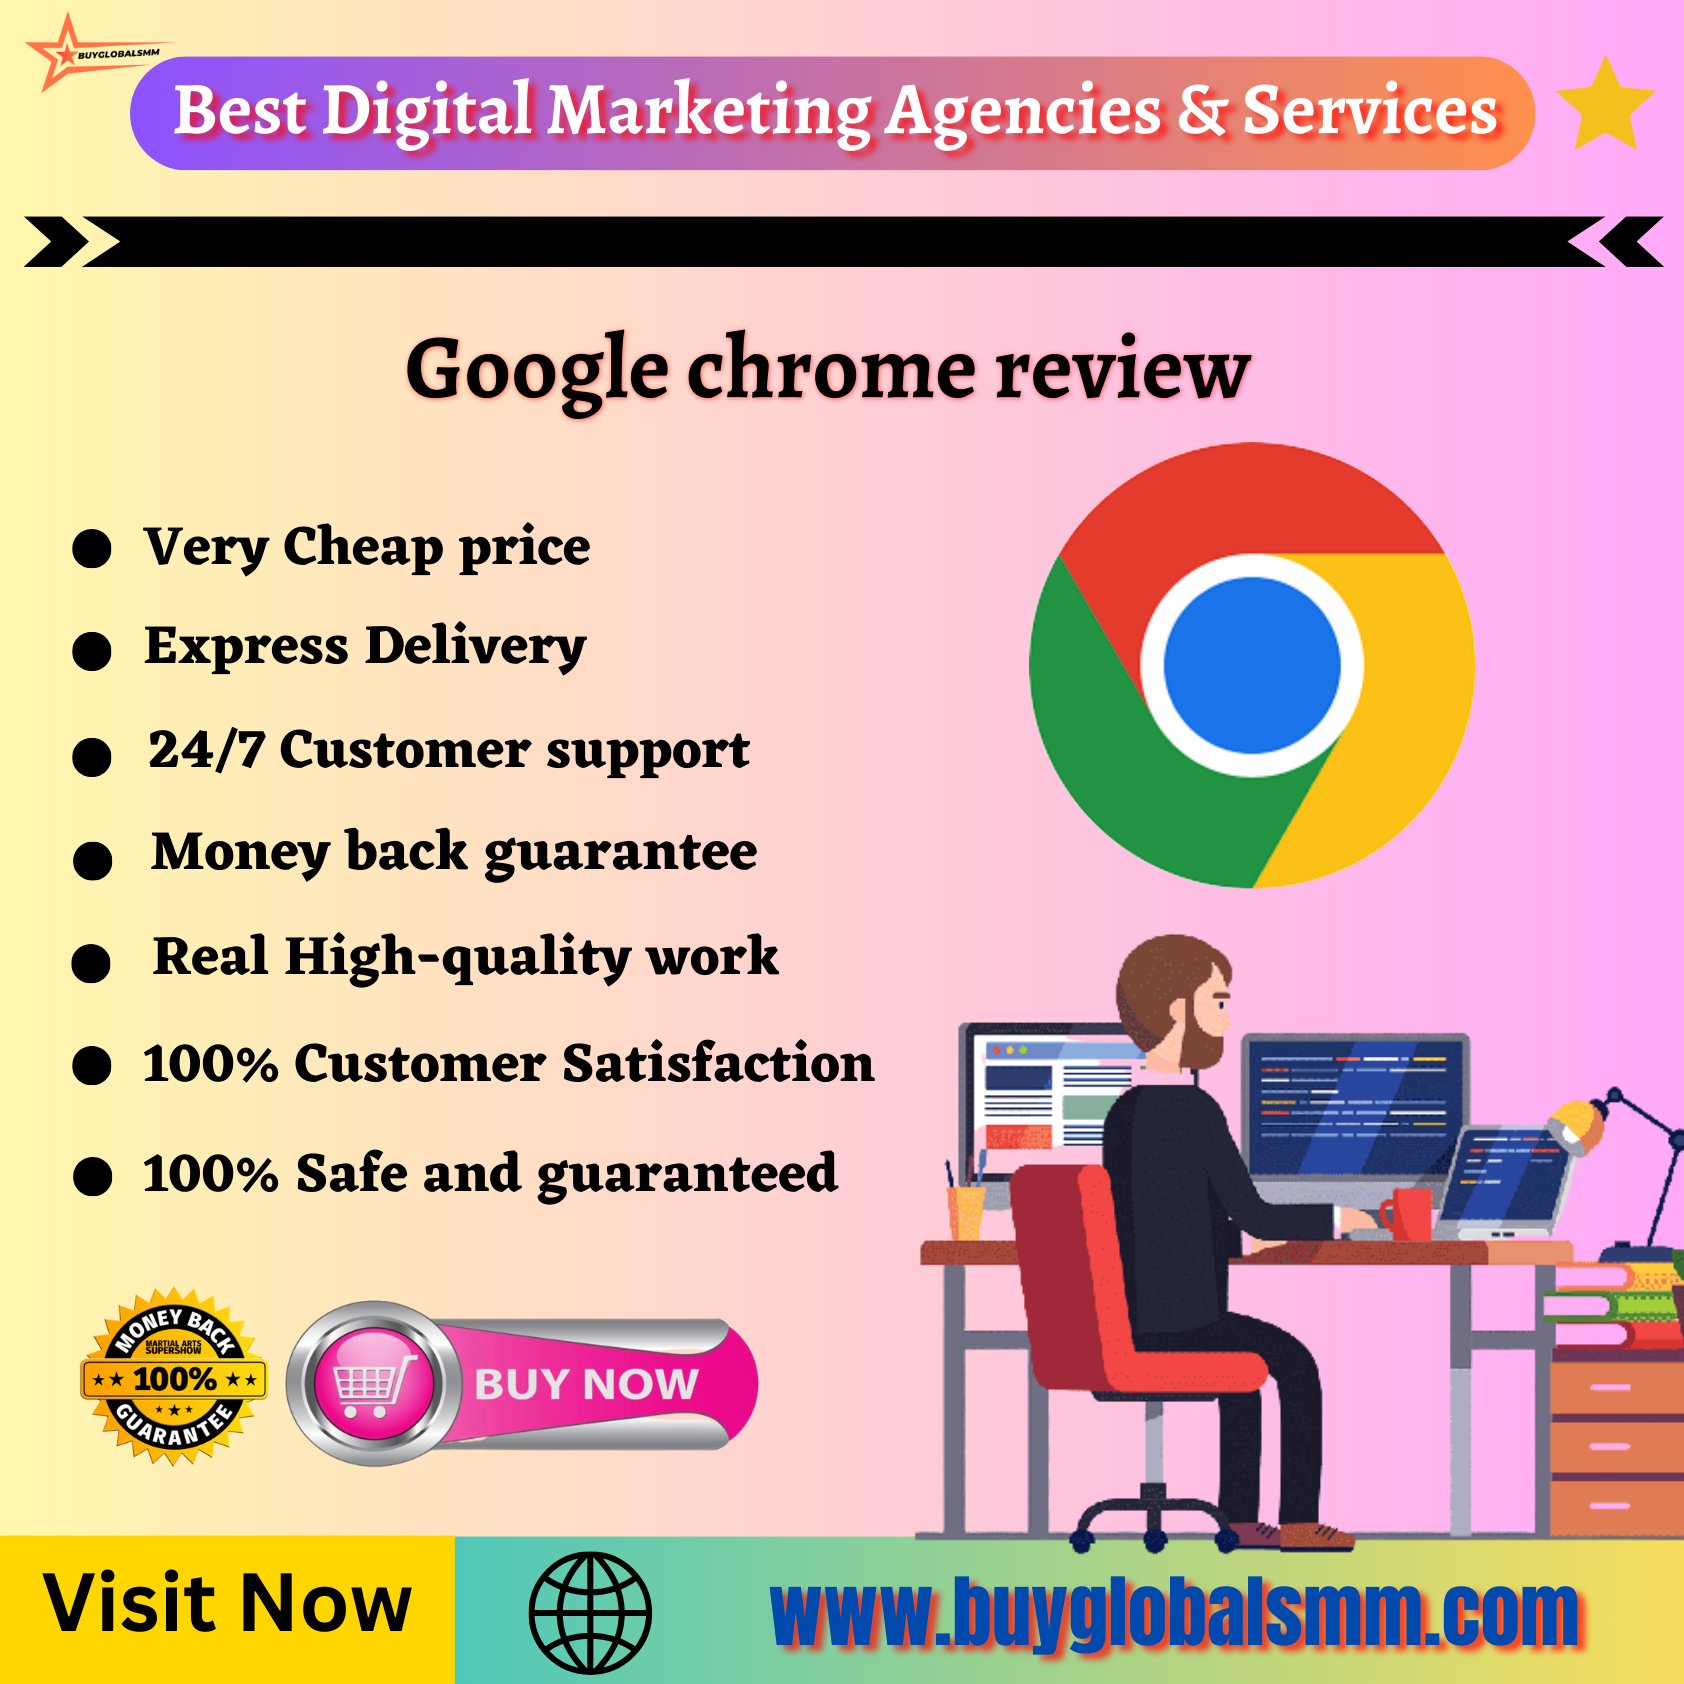 Google chrome review -